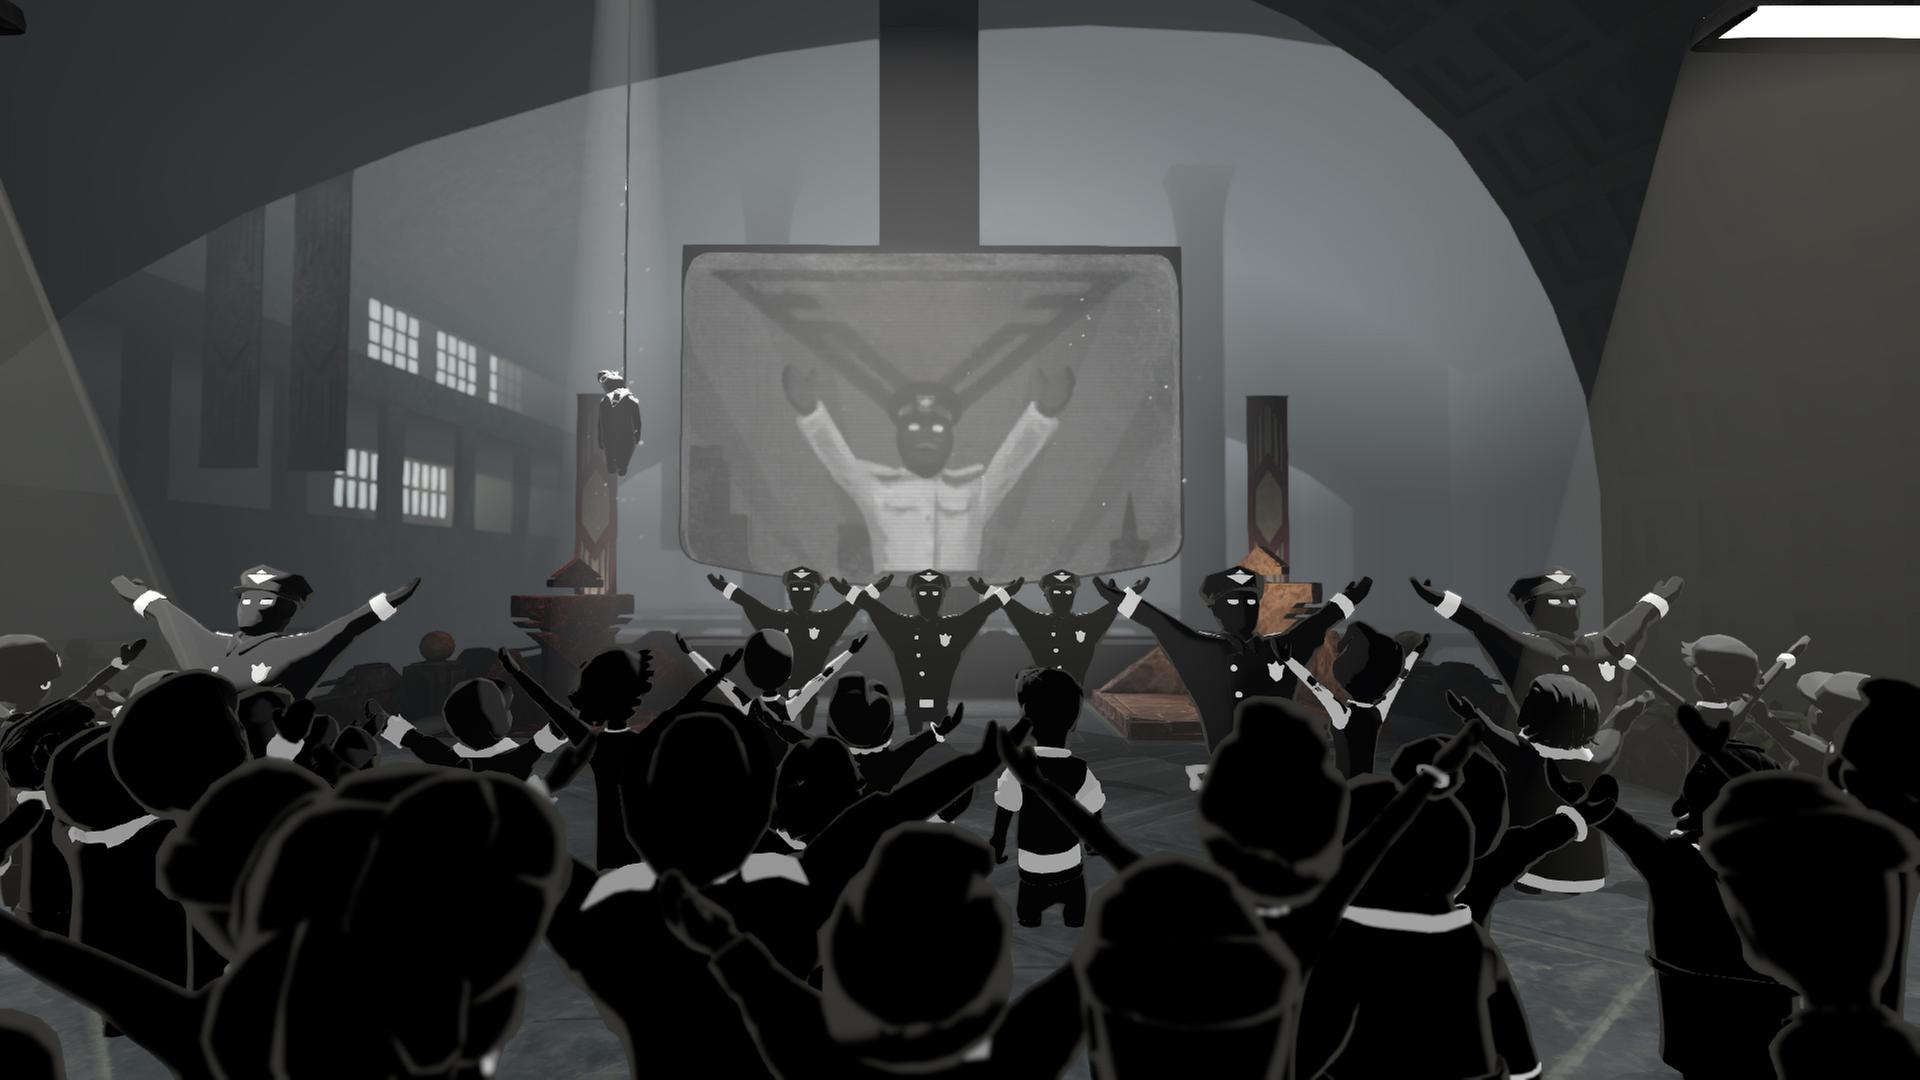 Screenshot aus Beholder 2: An der Hinrichtungsstätte zeigt eine Leinwand den Diktator, davor stehen die Ministeriumsangestellten und grüßen ihn mit erhobenen Armen.